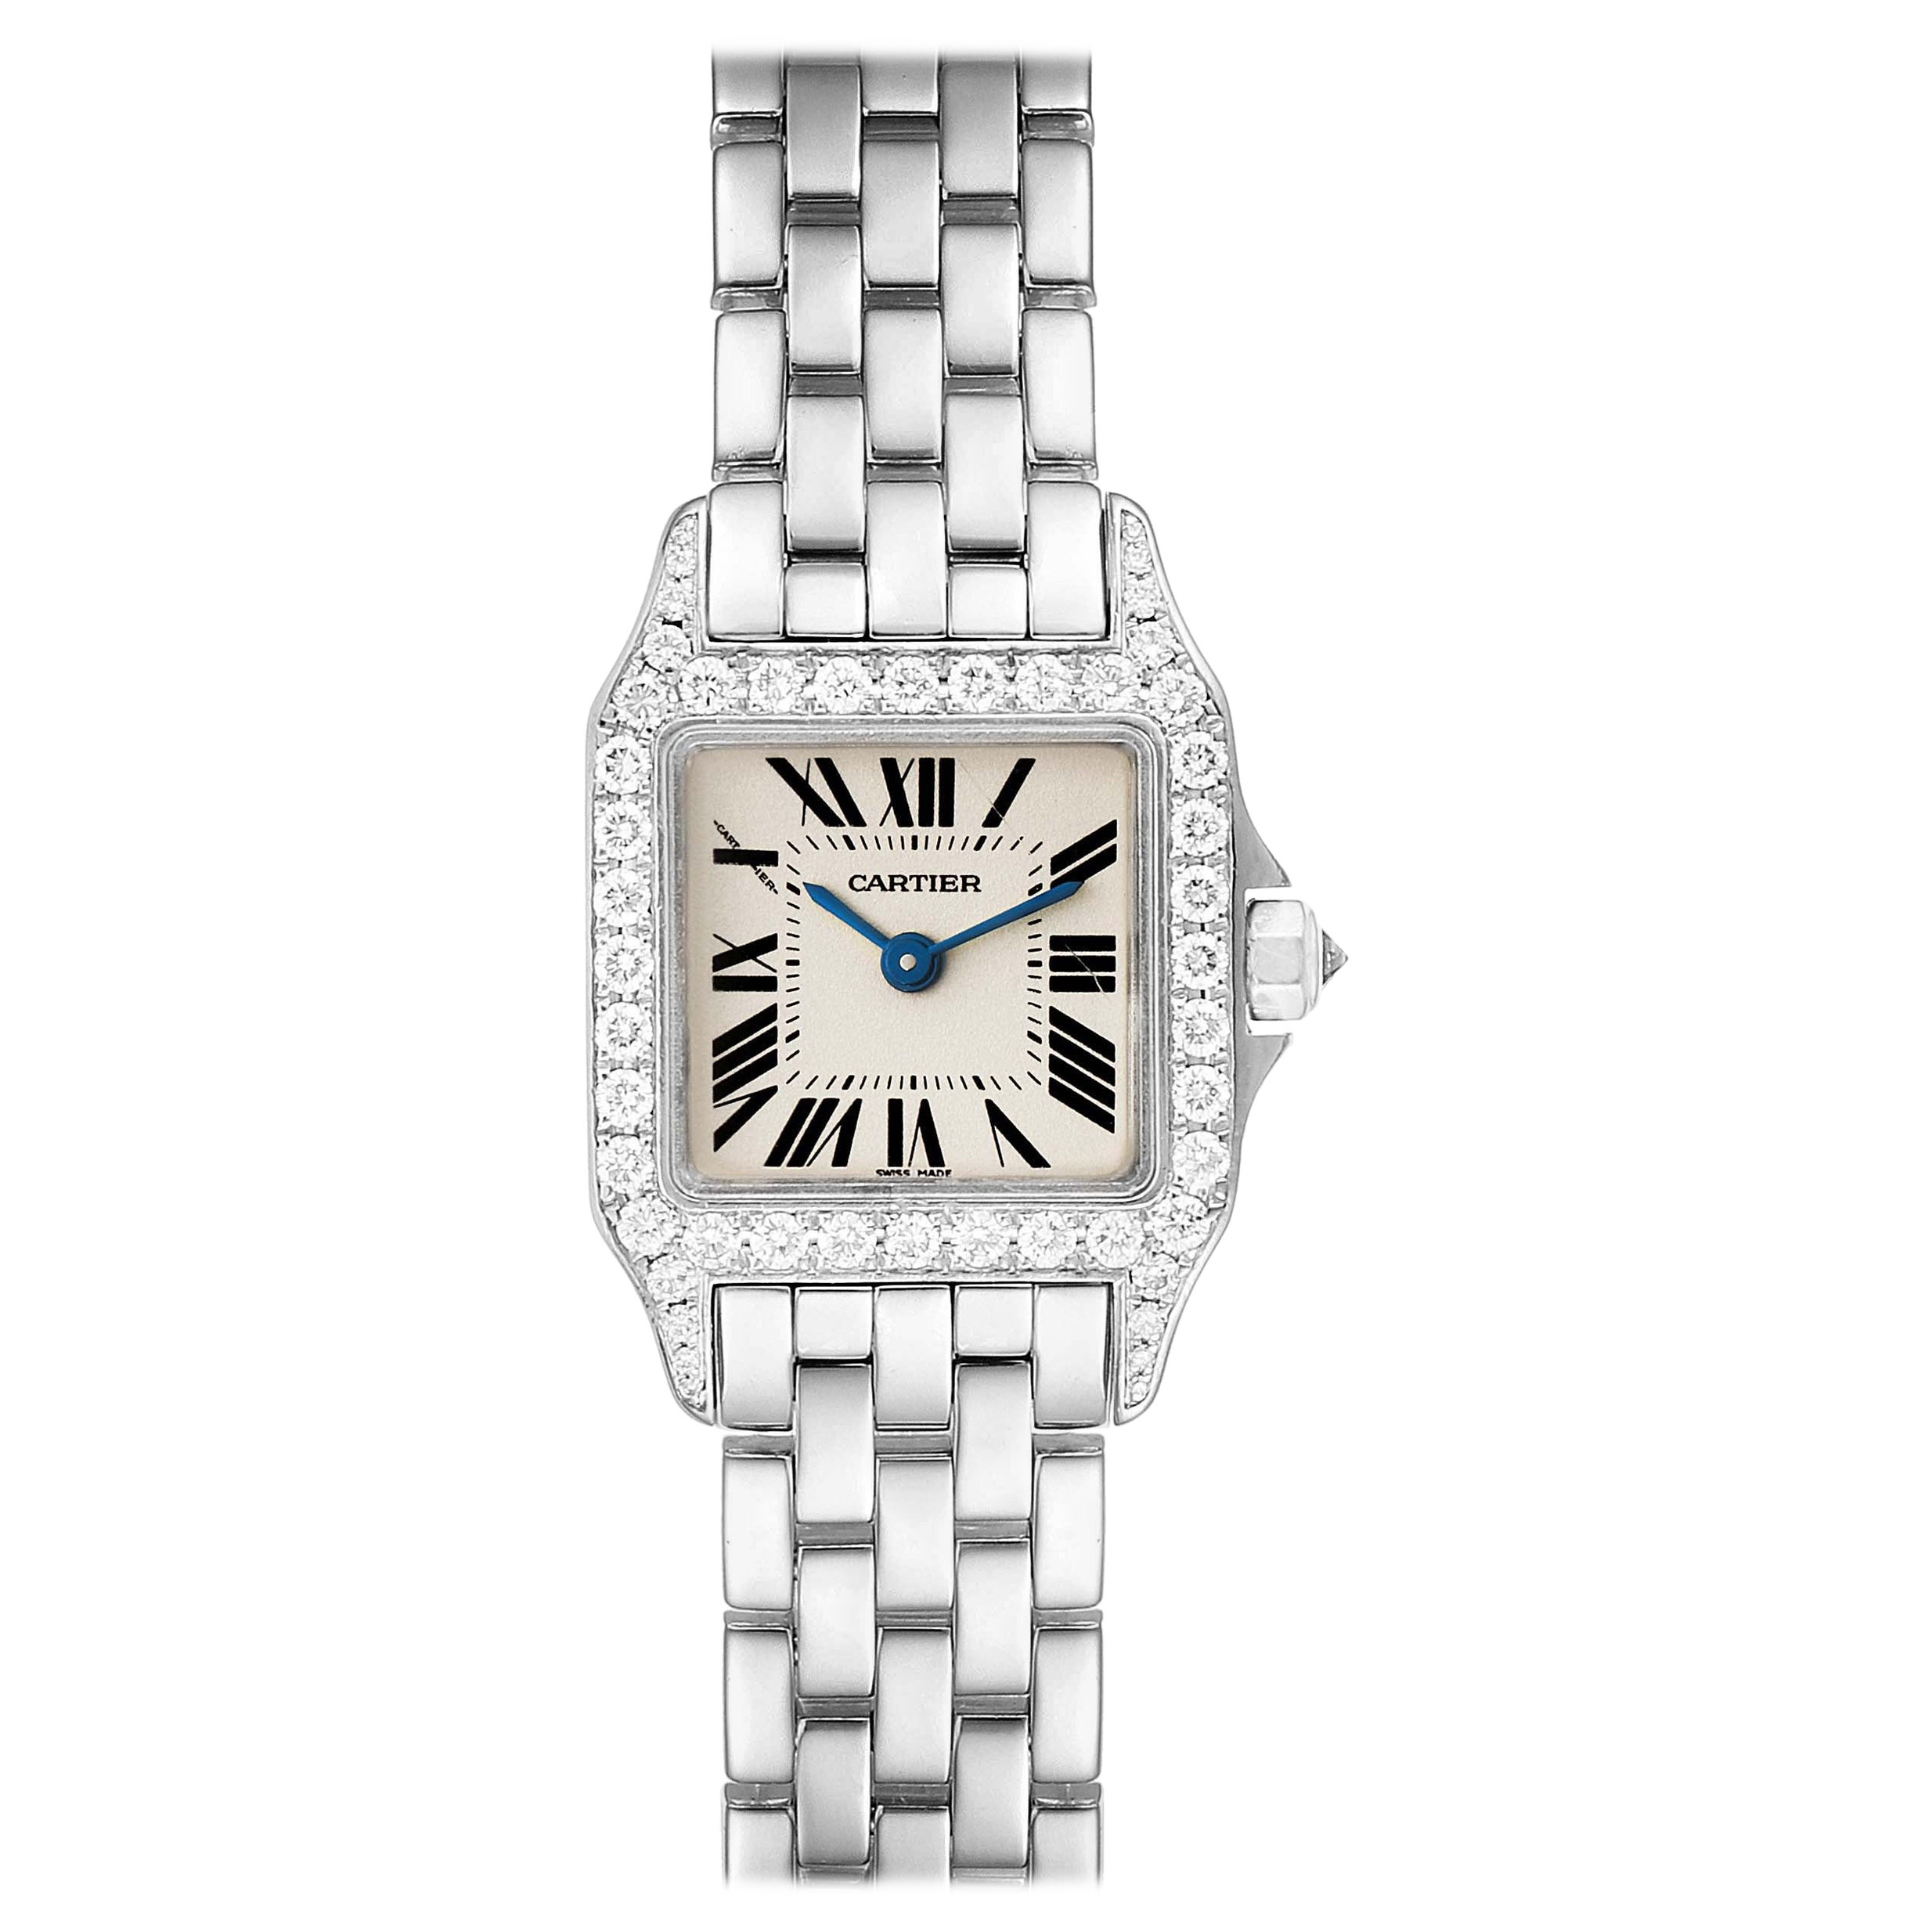 Cartier Santos Demoiselle White Gold Diamond Ladies Watch WF9005Y8